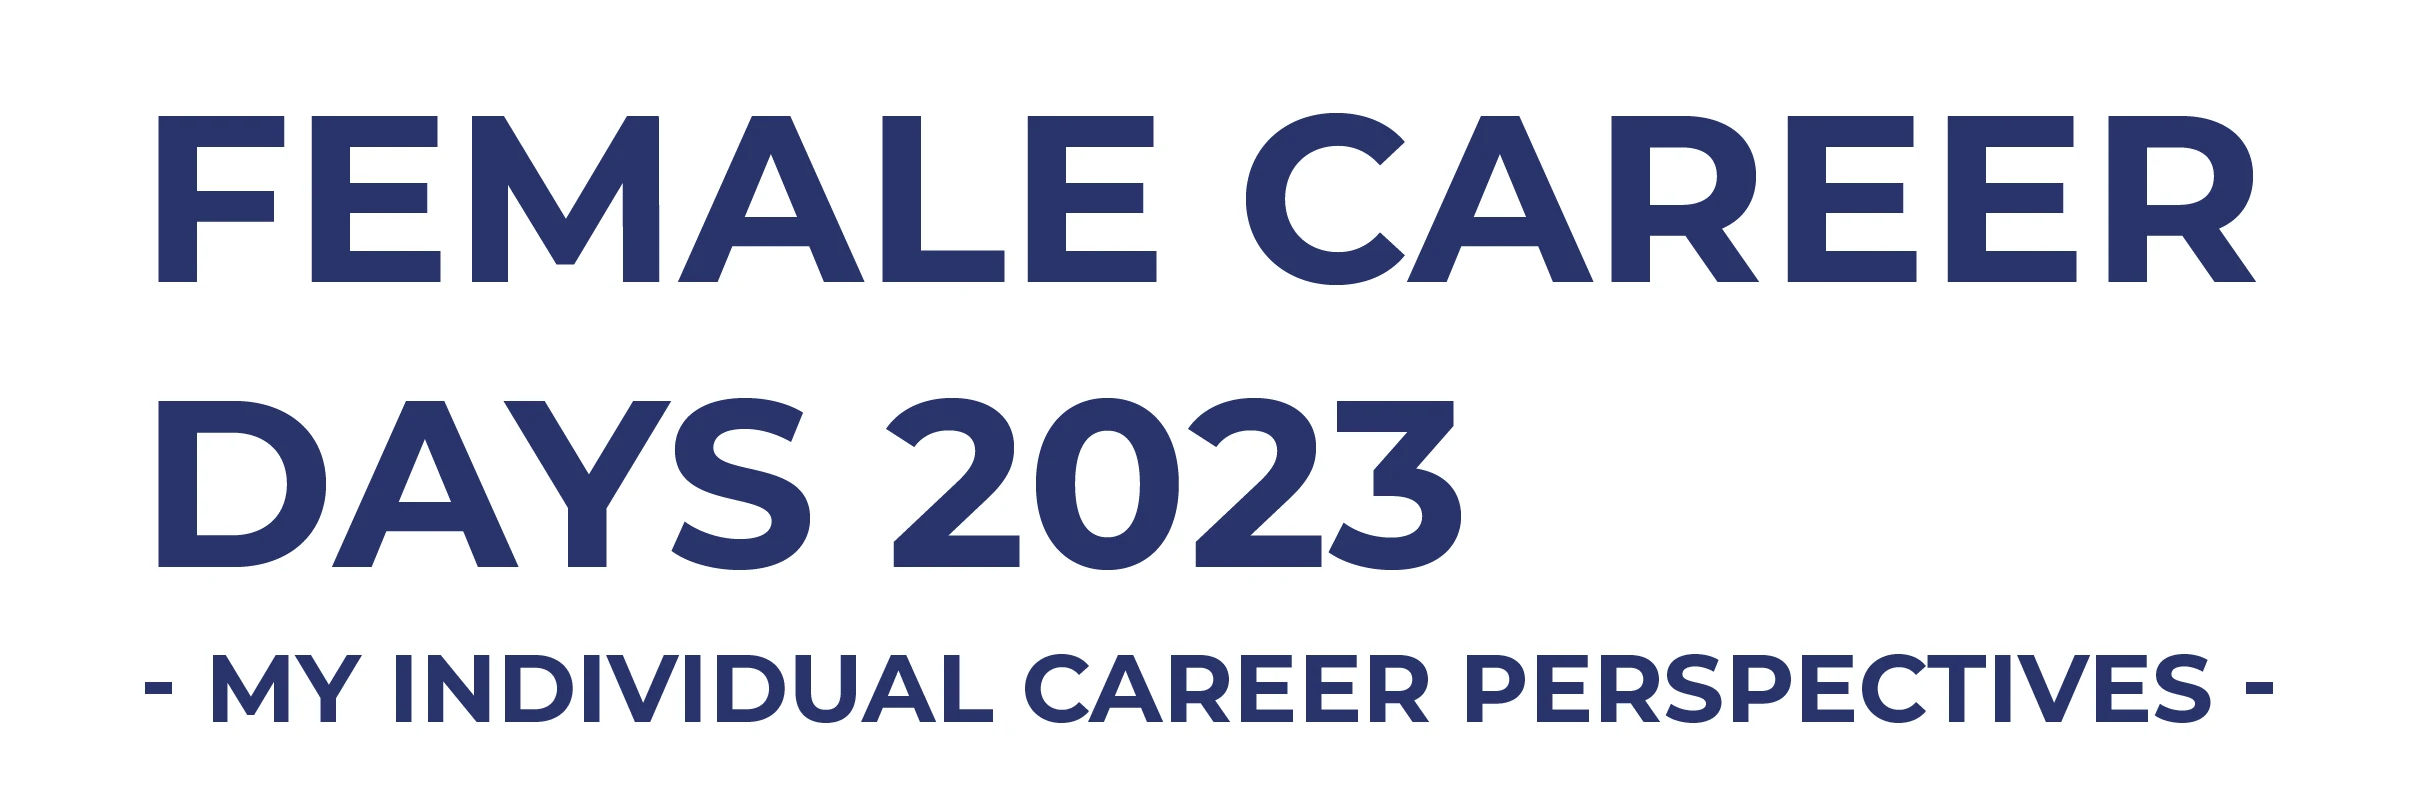 Noch schnell registrieren: Female Career Days 2023